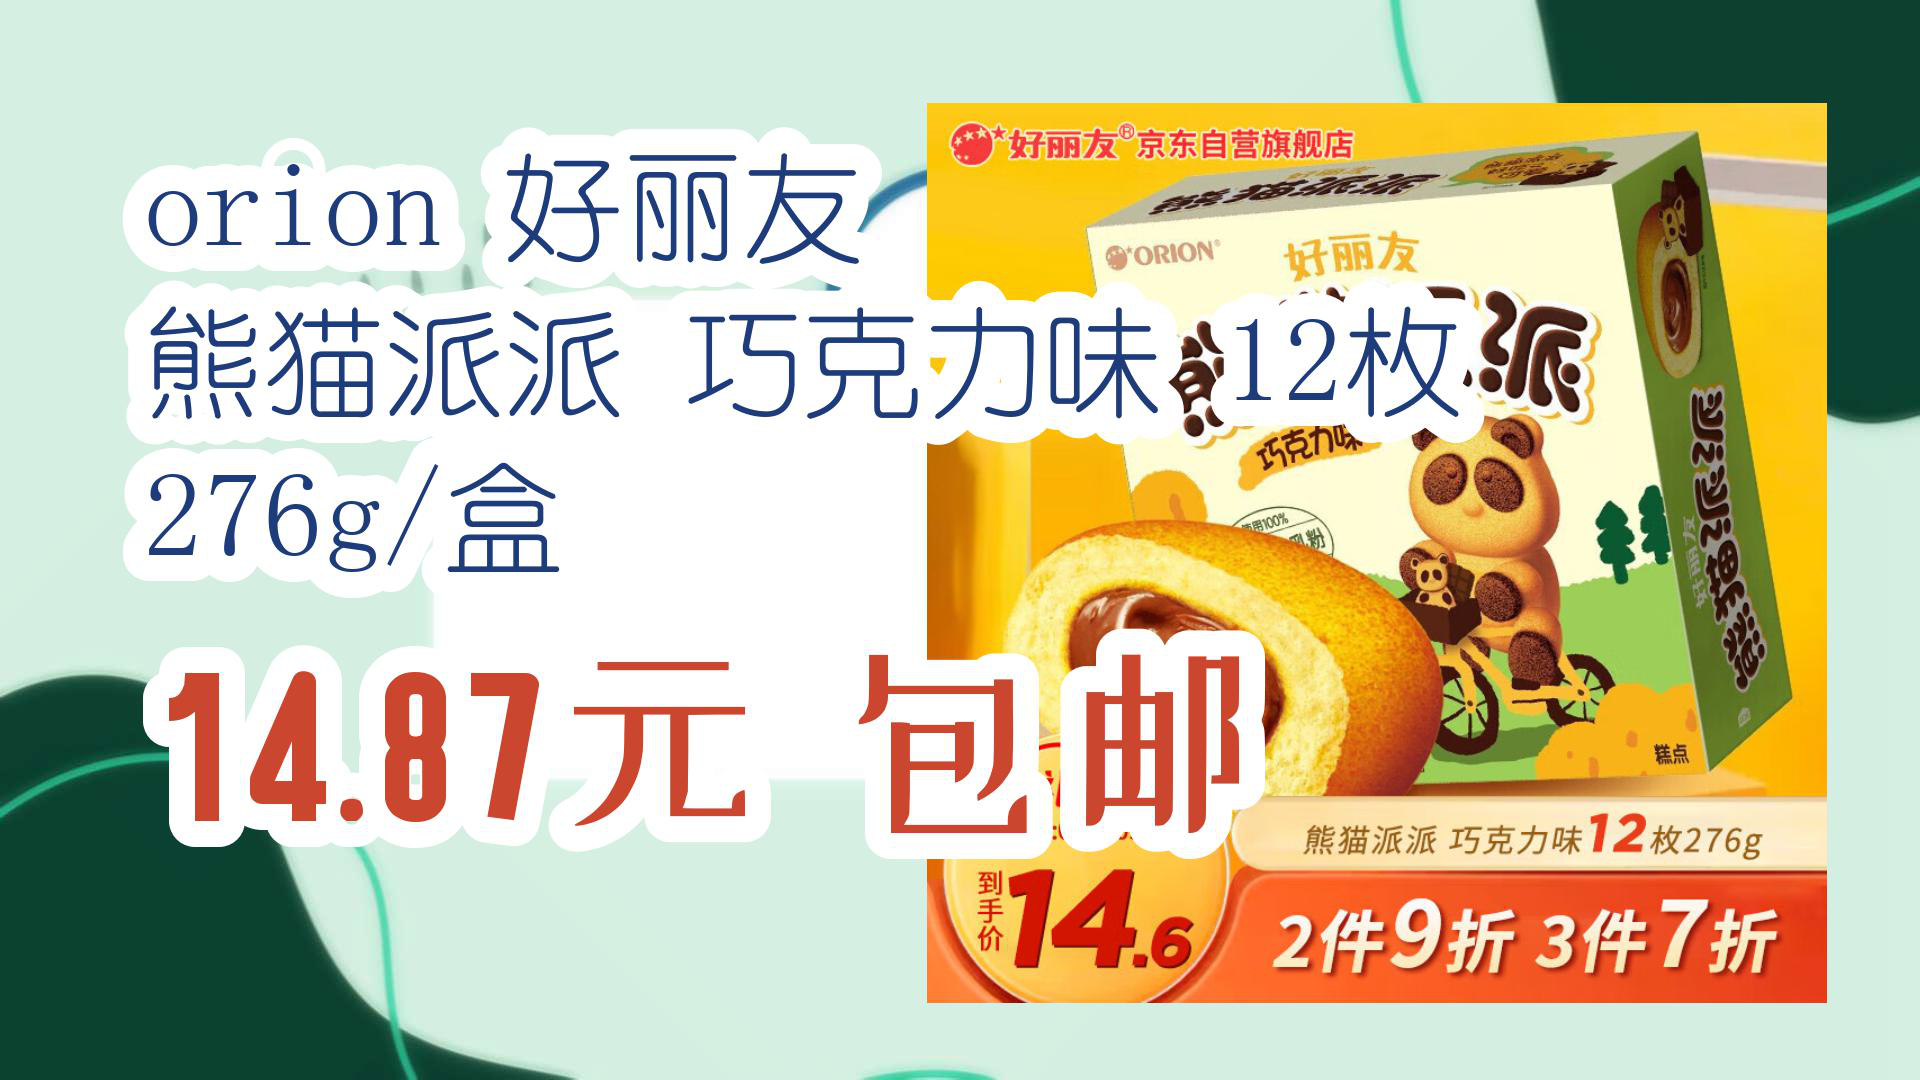 【京东】orion 好丽友 熊猫派派 巧克力味 12枚 276g/盒 1487元 包邮